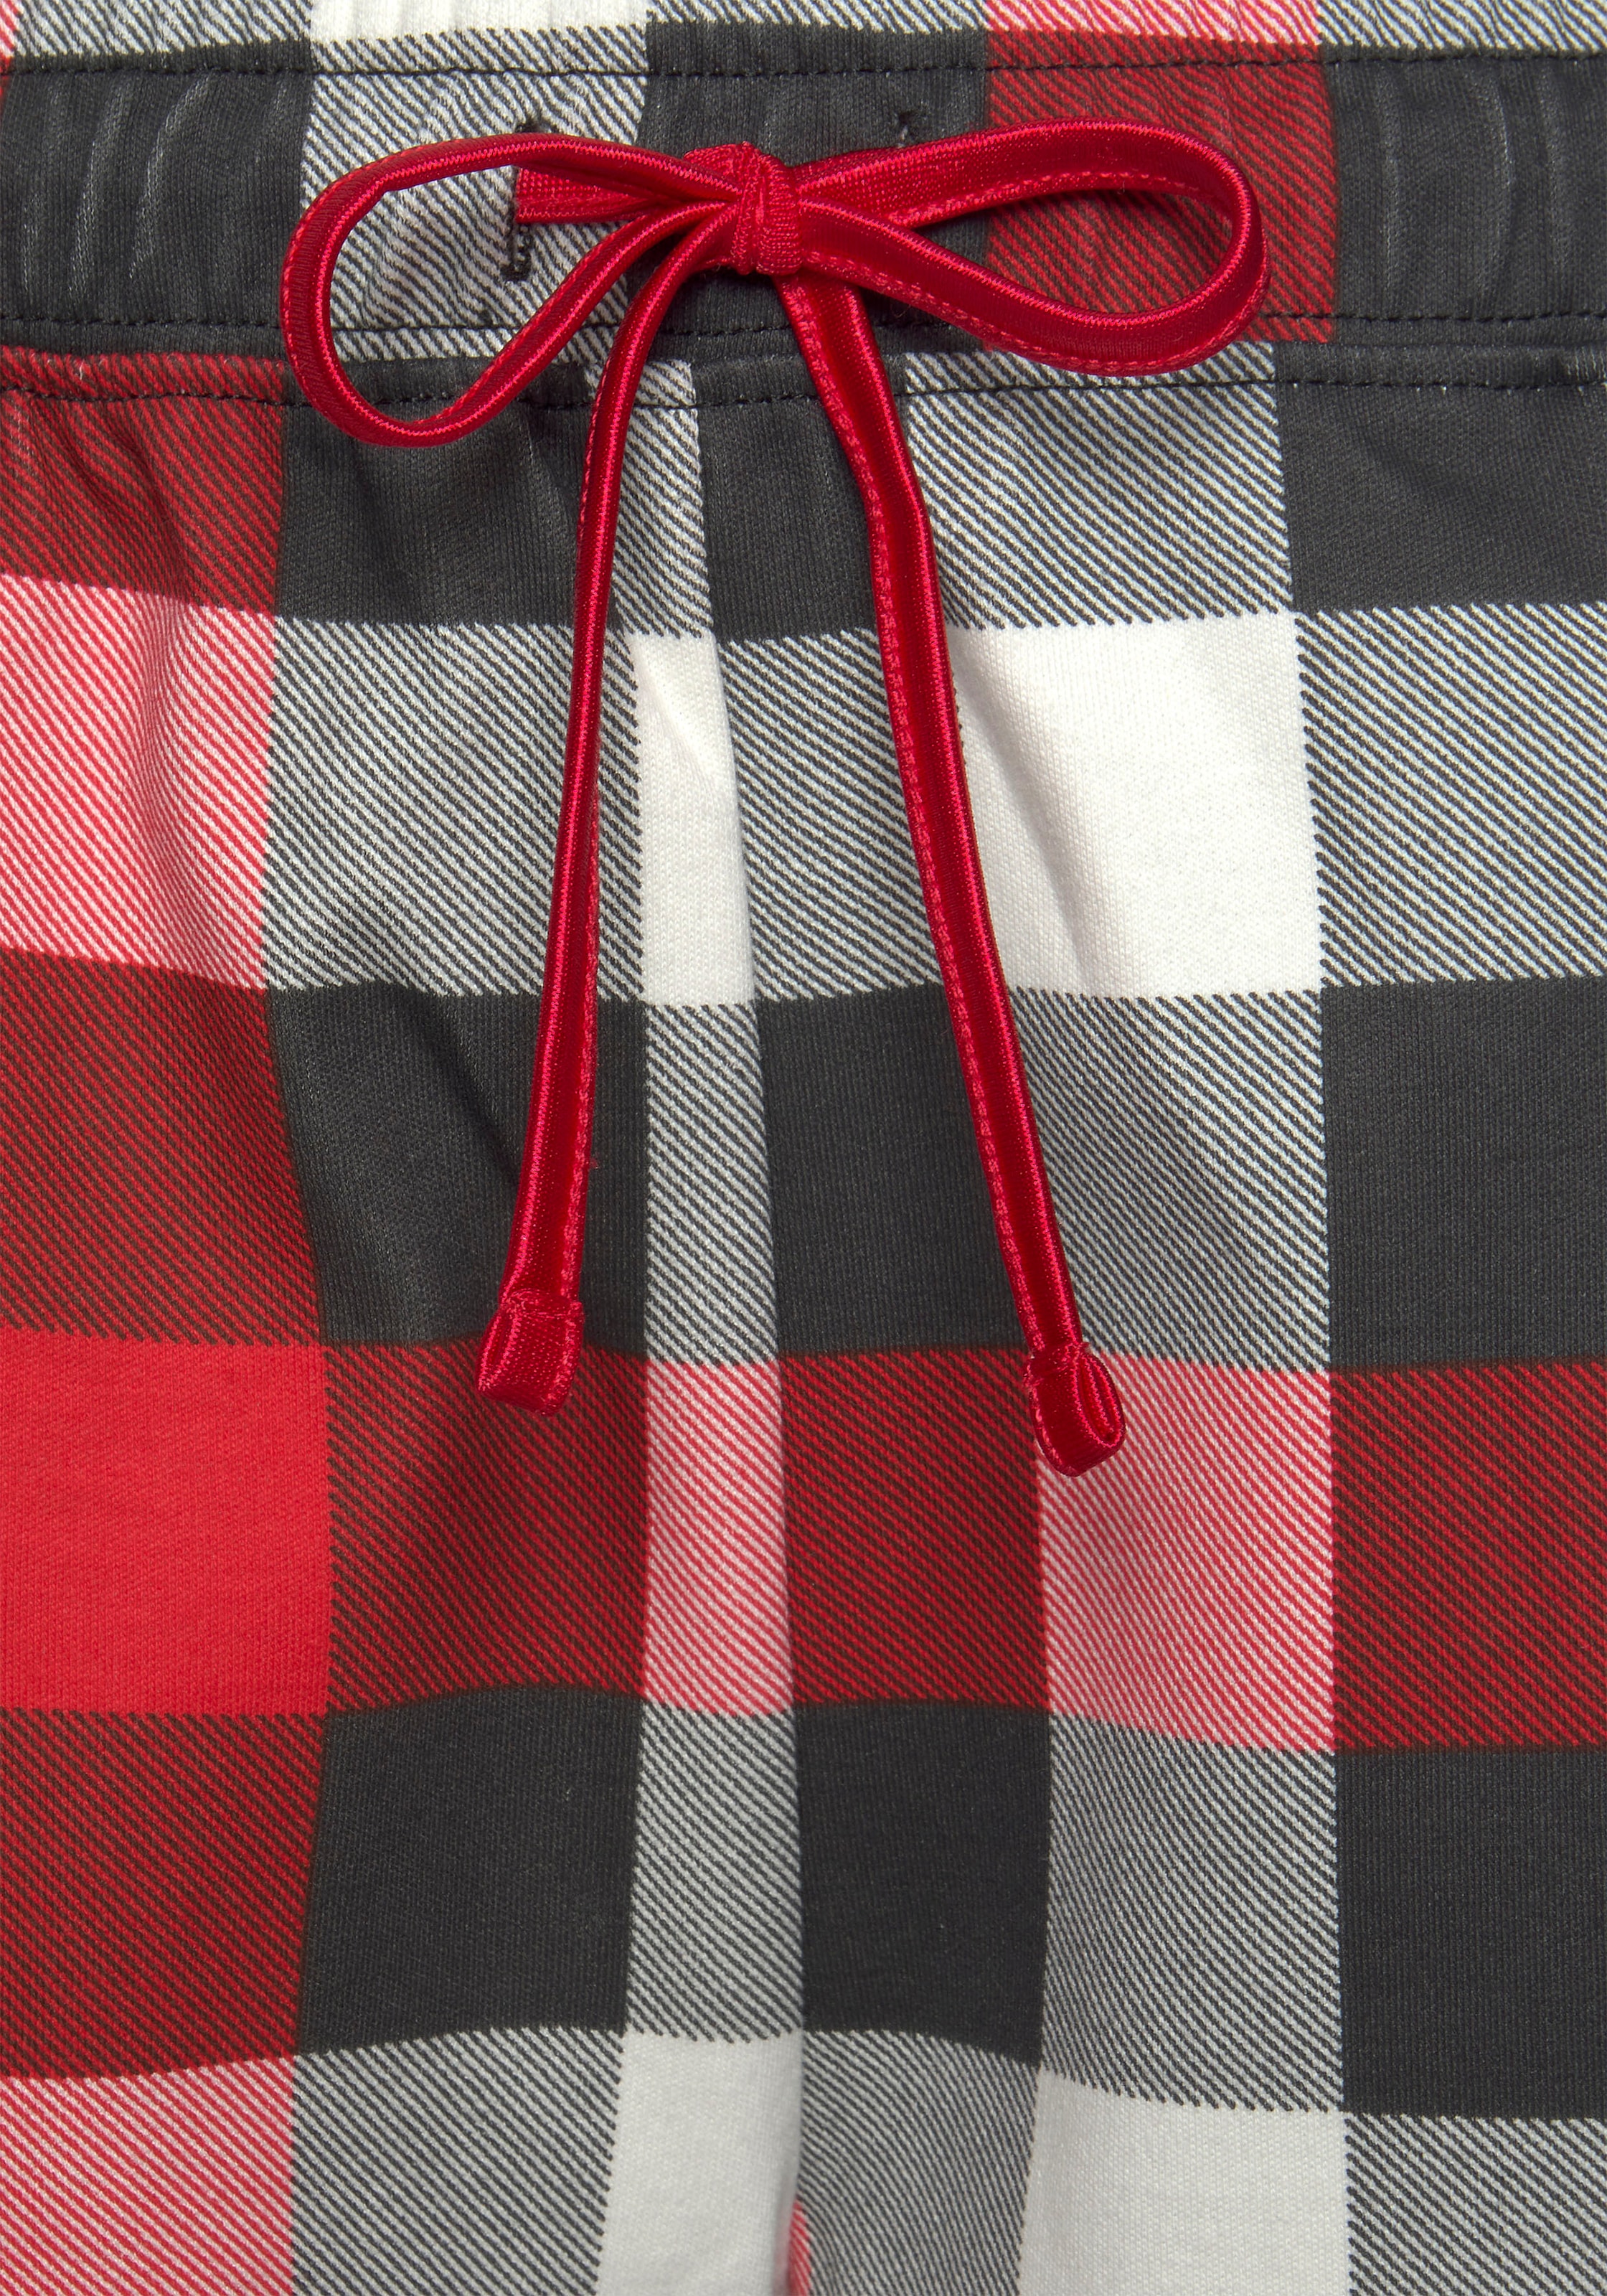 LASCANA Schlafanzug, (3 tlg., incl. Lingerie & Schlafmaske), » Karodruck | Bademode, kaufen online Unterwäsche LASCANA mit